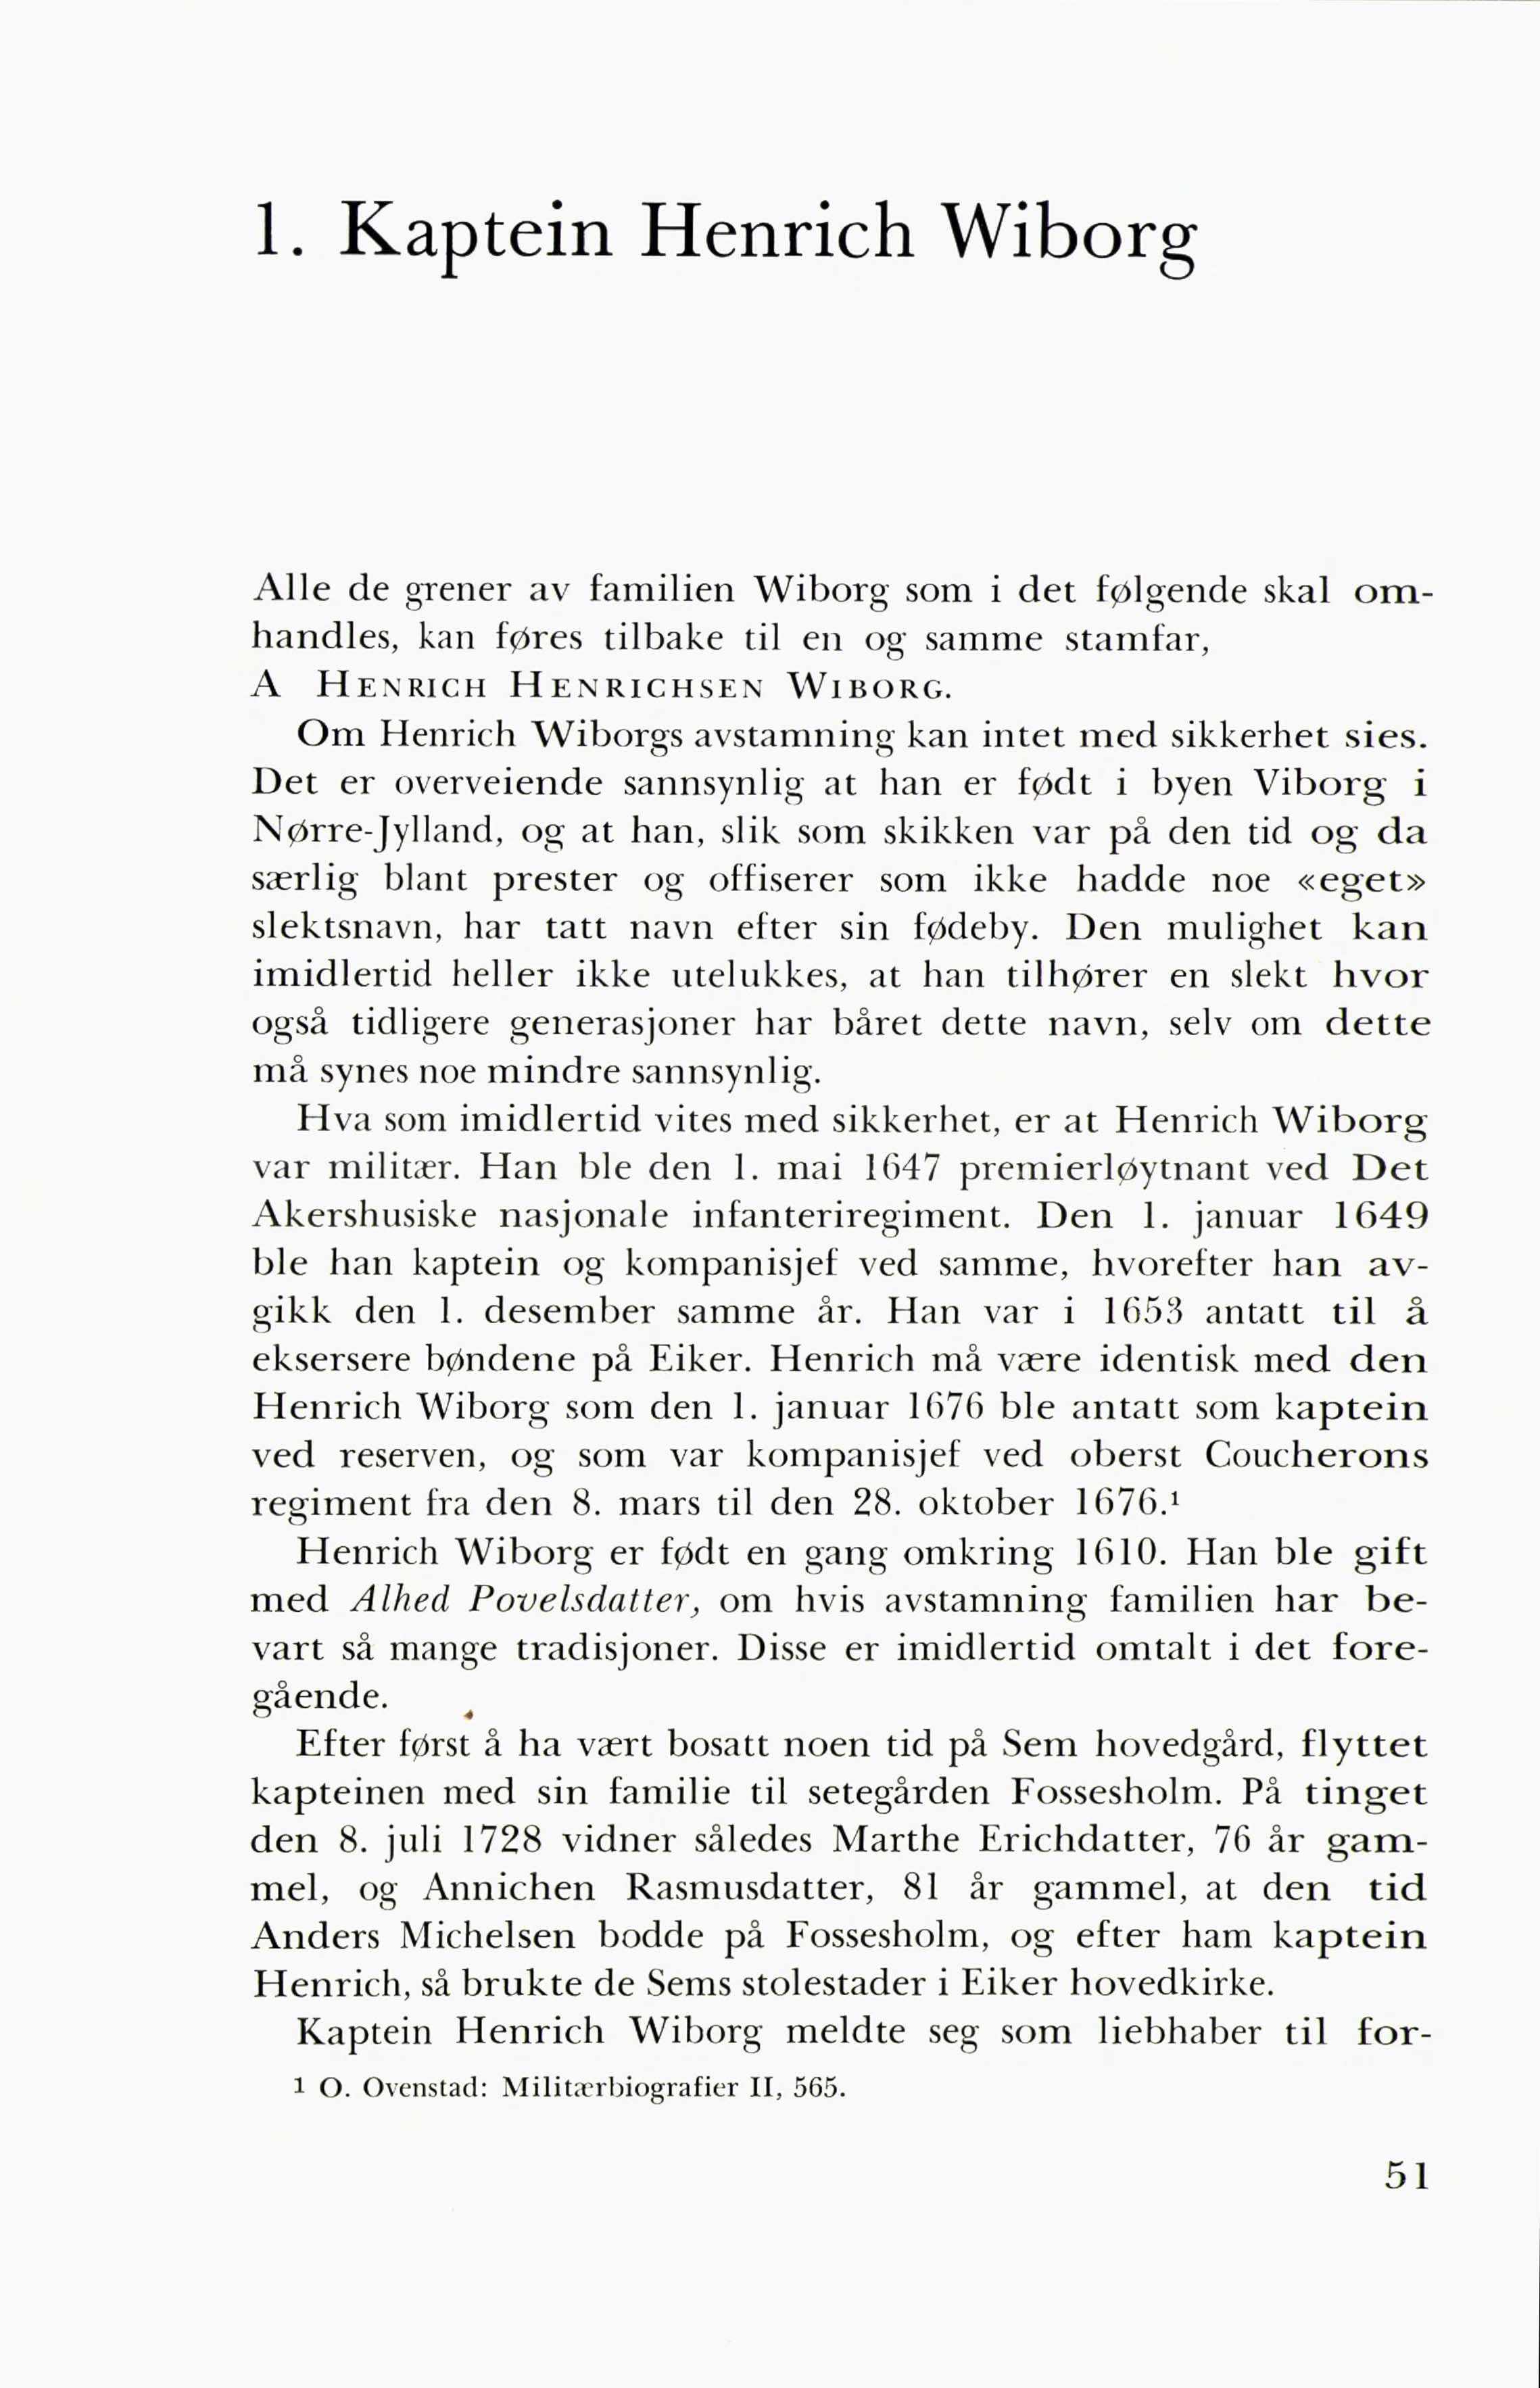 Grener av Eiker-slekten Wiborg (Yngvar Hauge, 1966) - Side 51-60.pdf